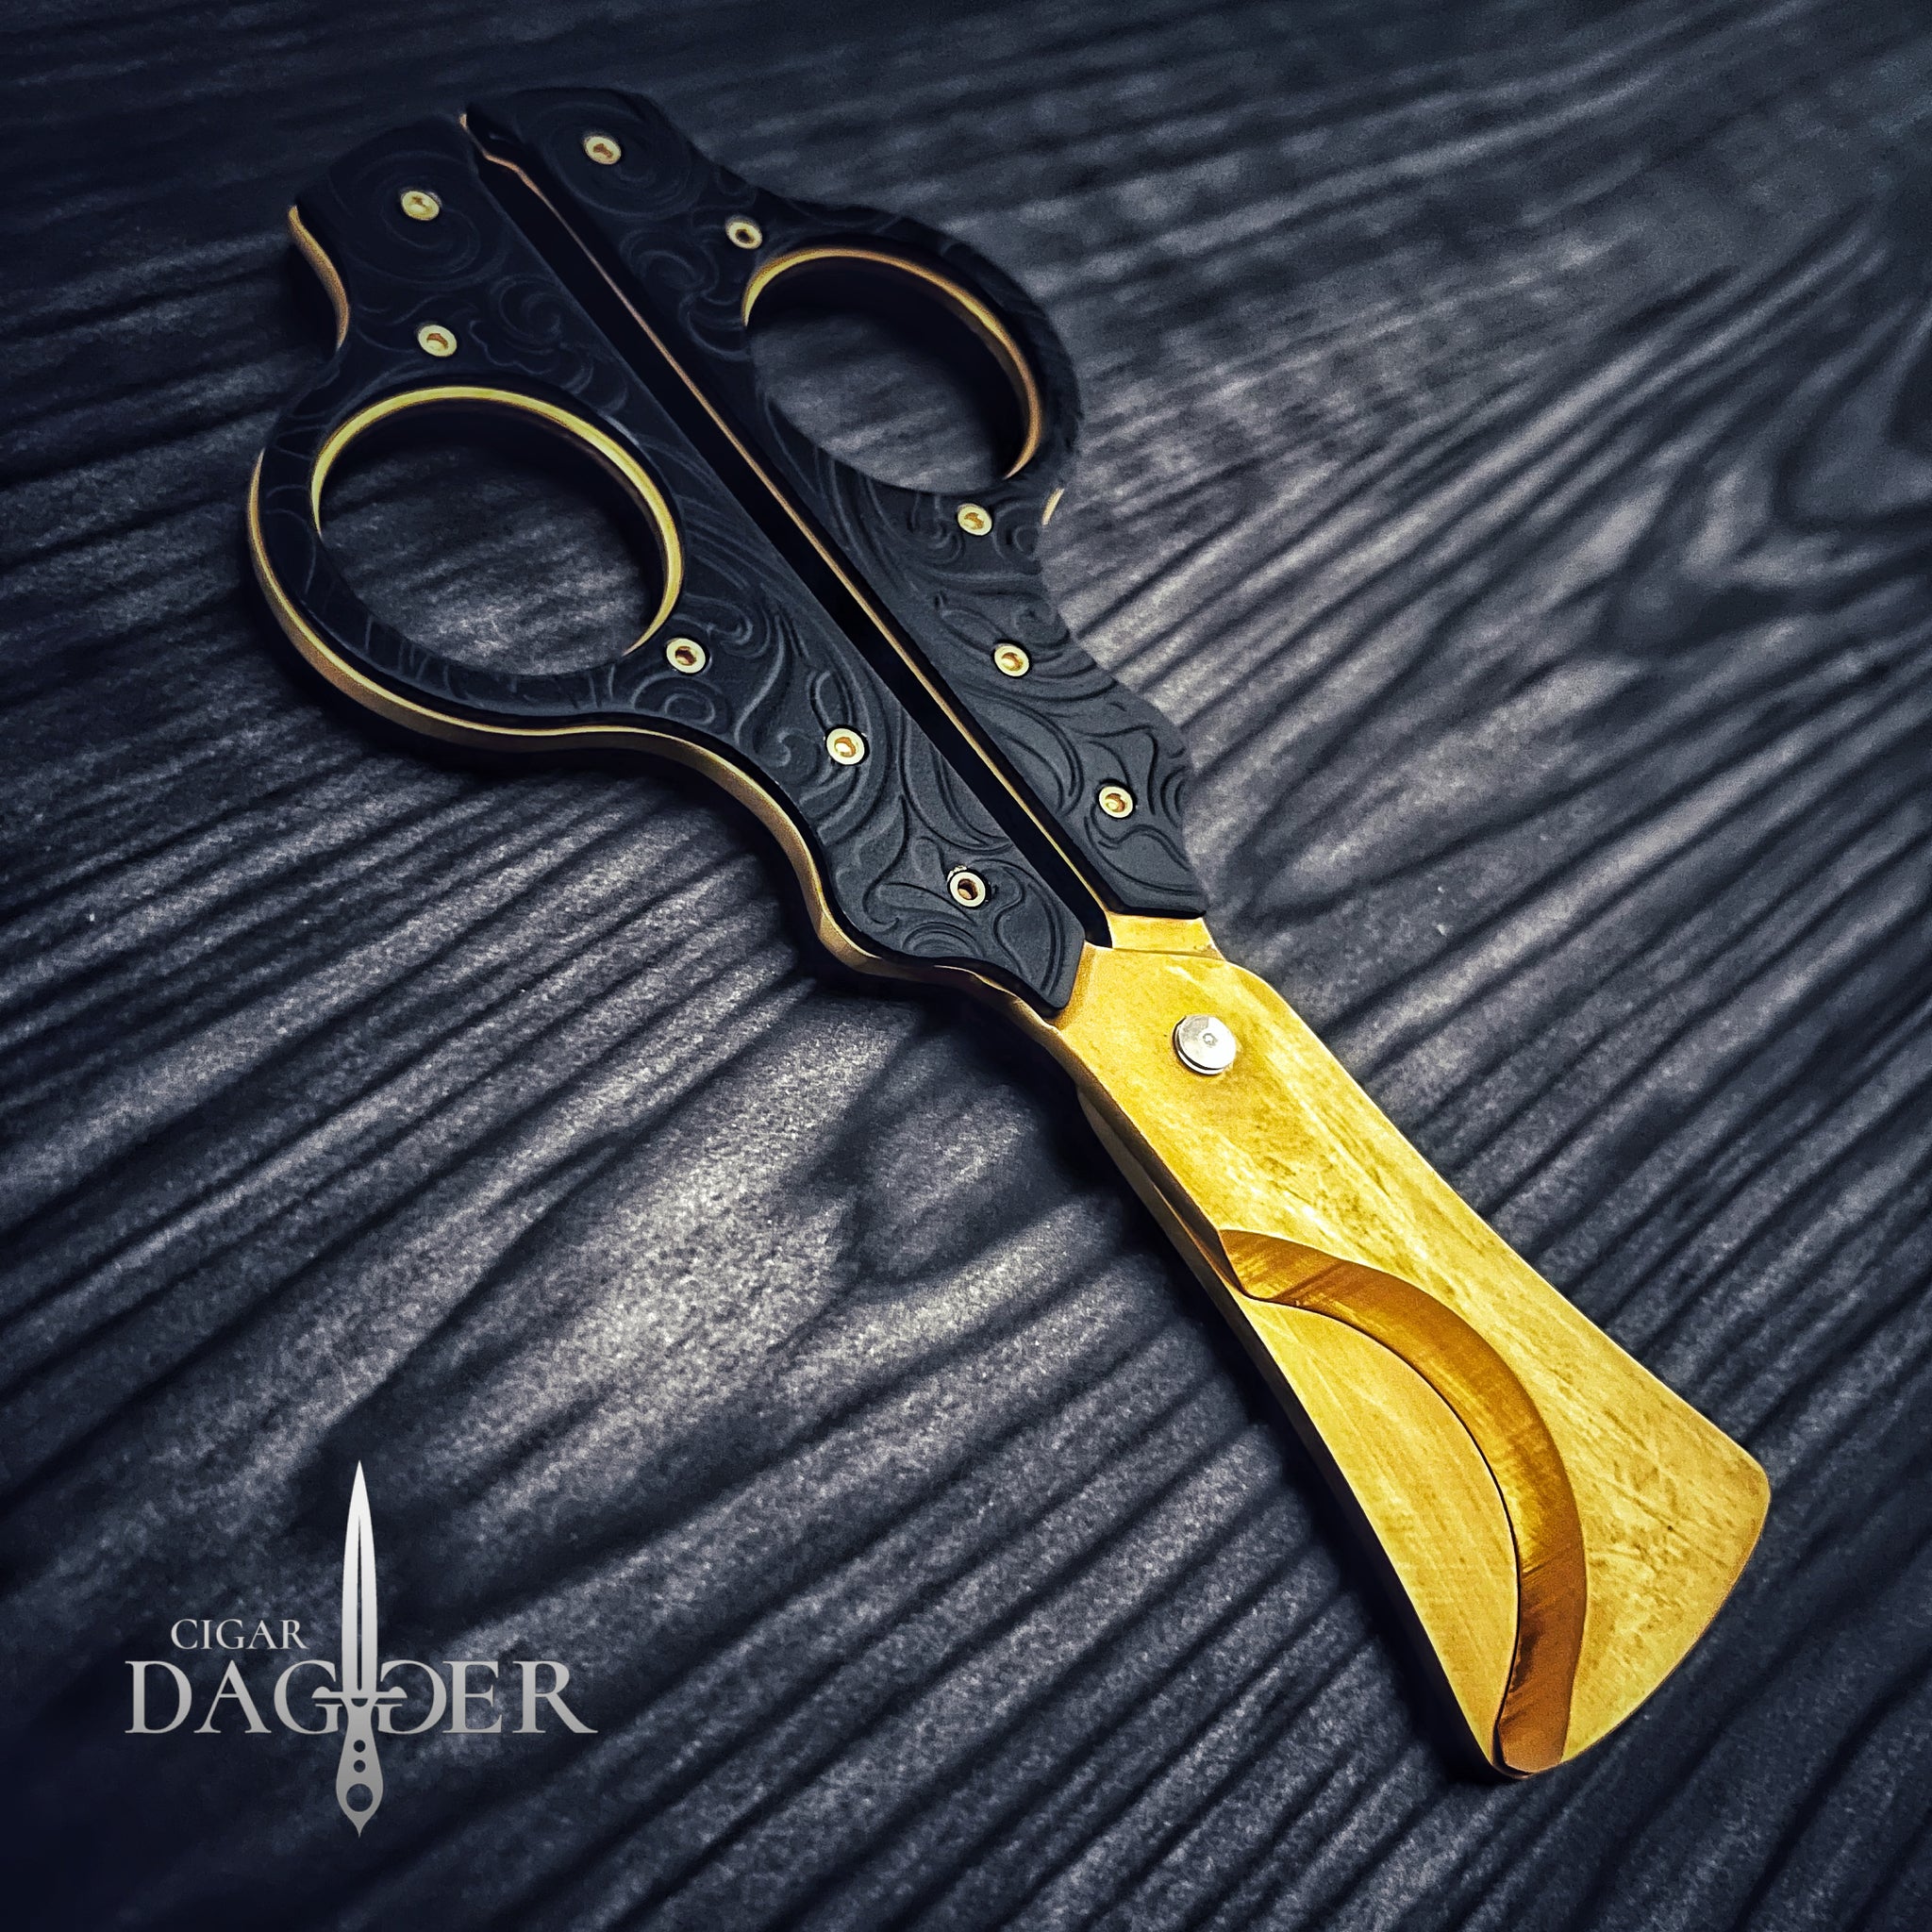 Exquisite Vintage Scissors